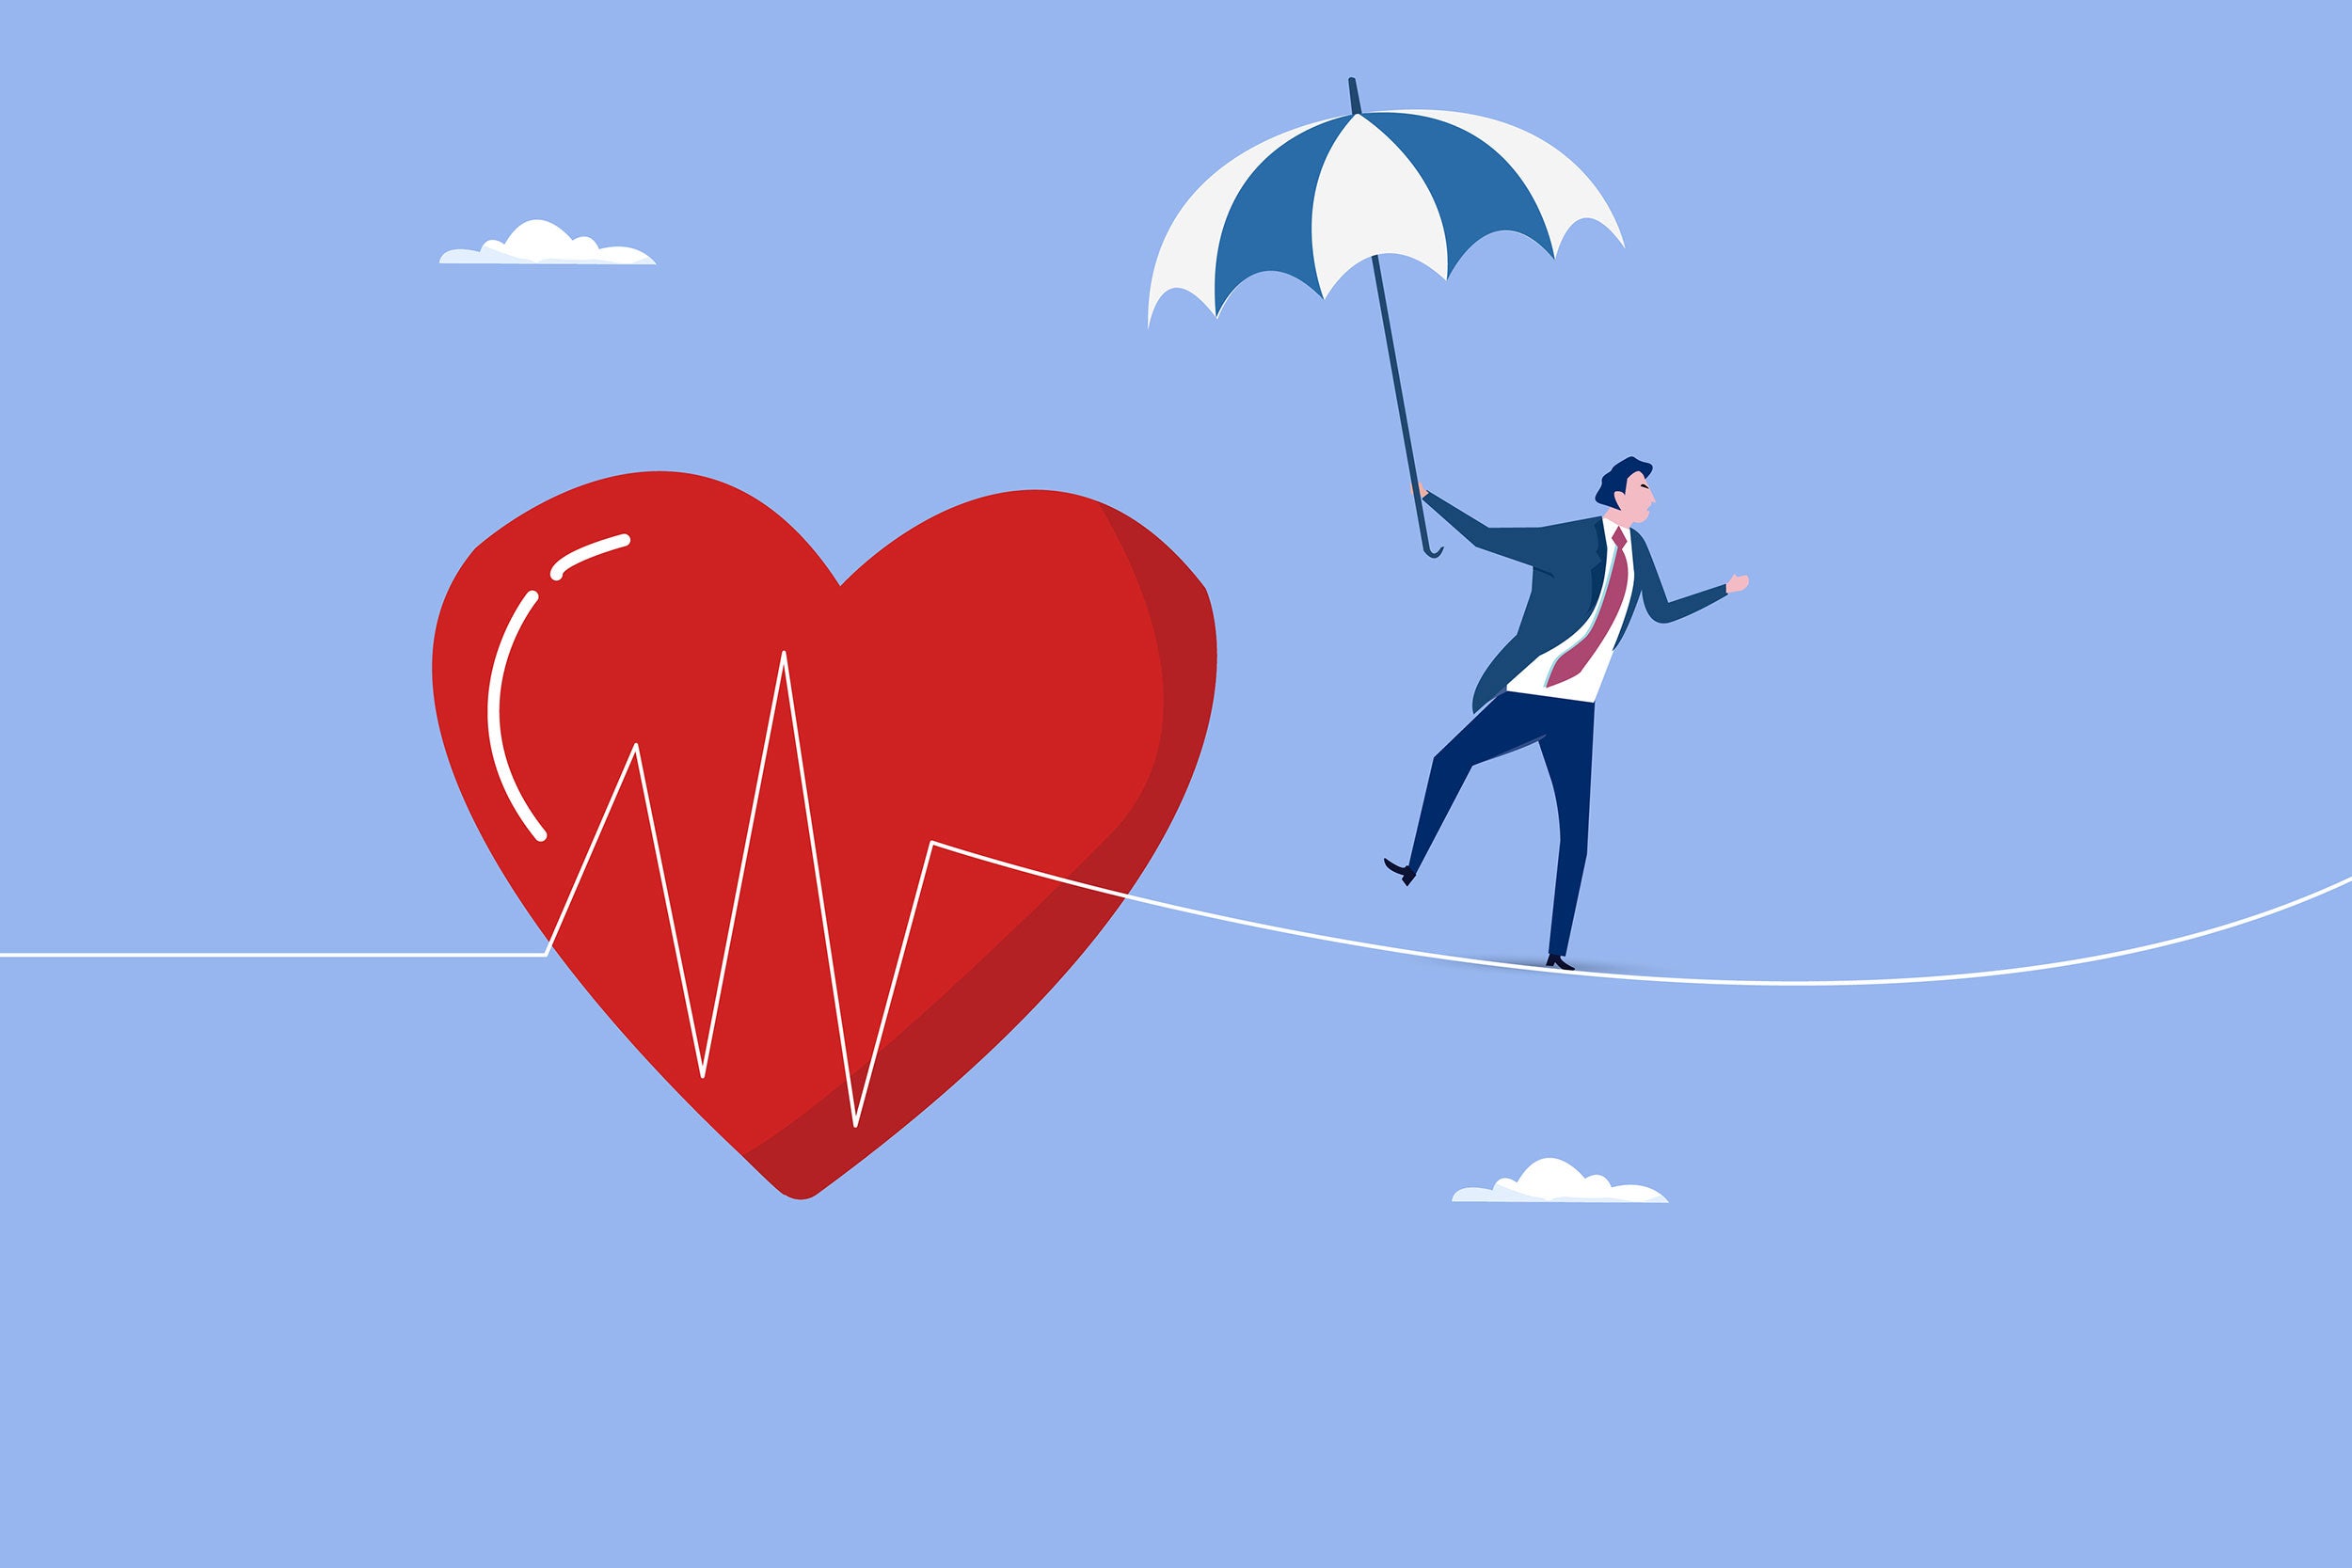 Work balance offers heart health.